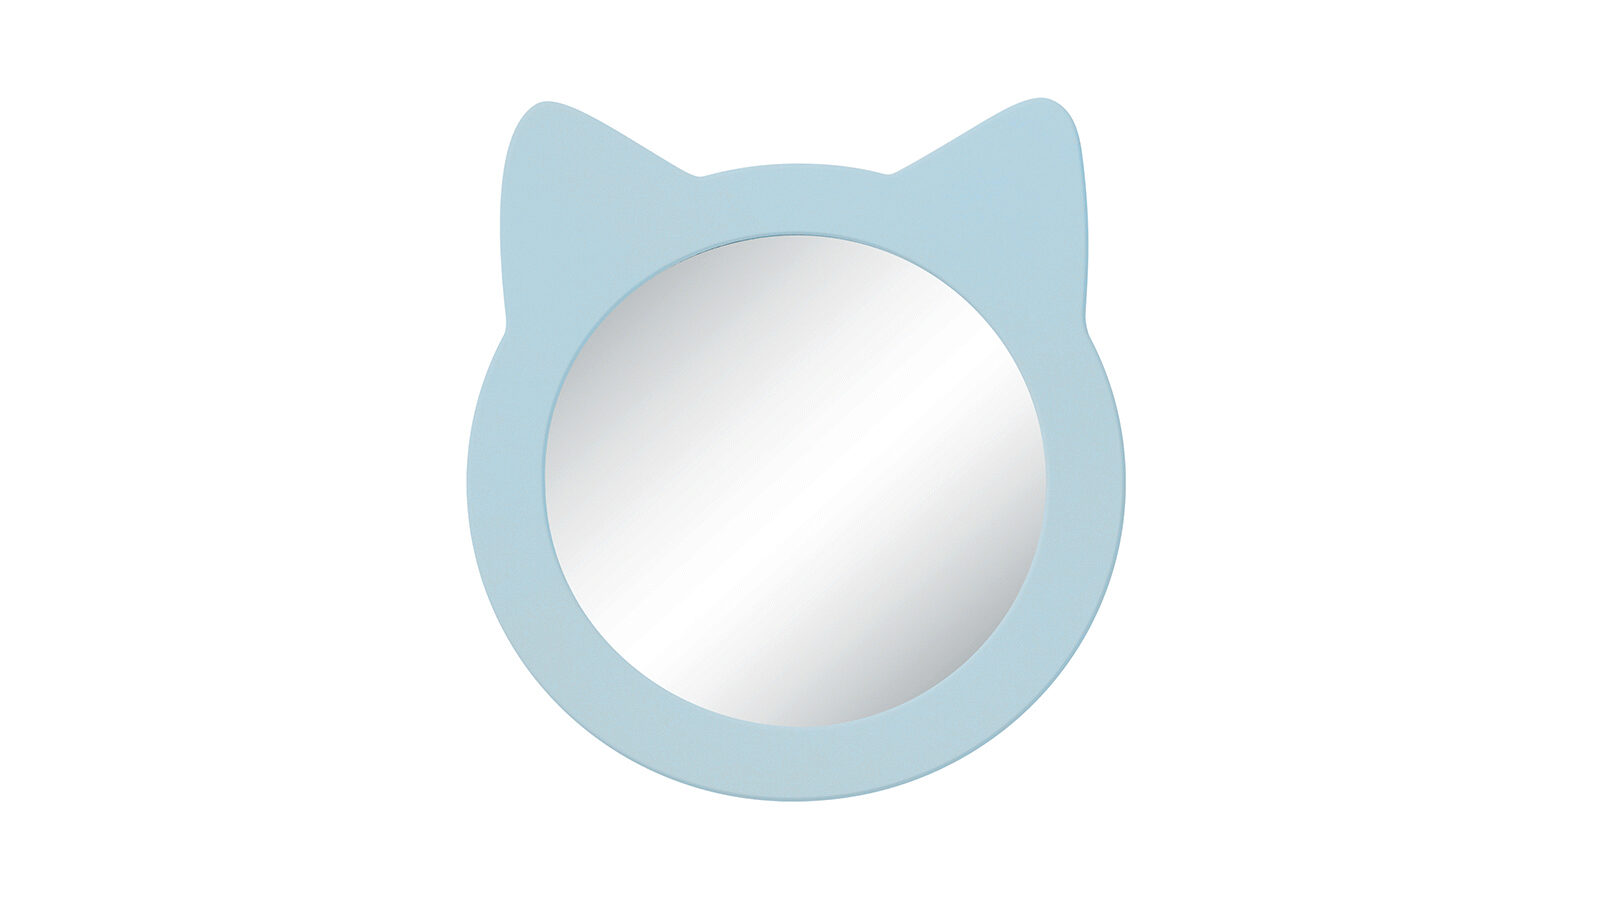 Зеркало навесное Котенок, цвет Голубой зеркало навесное мишка голубой